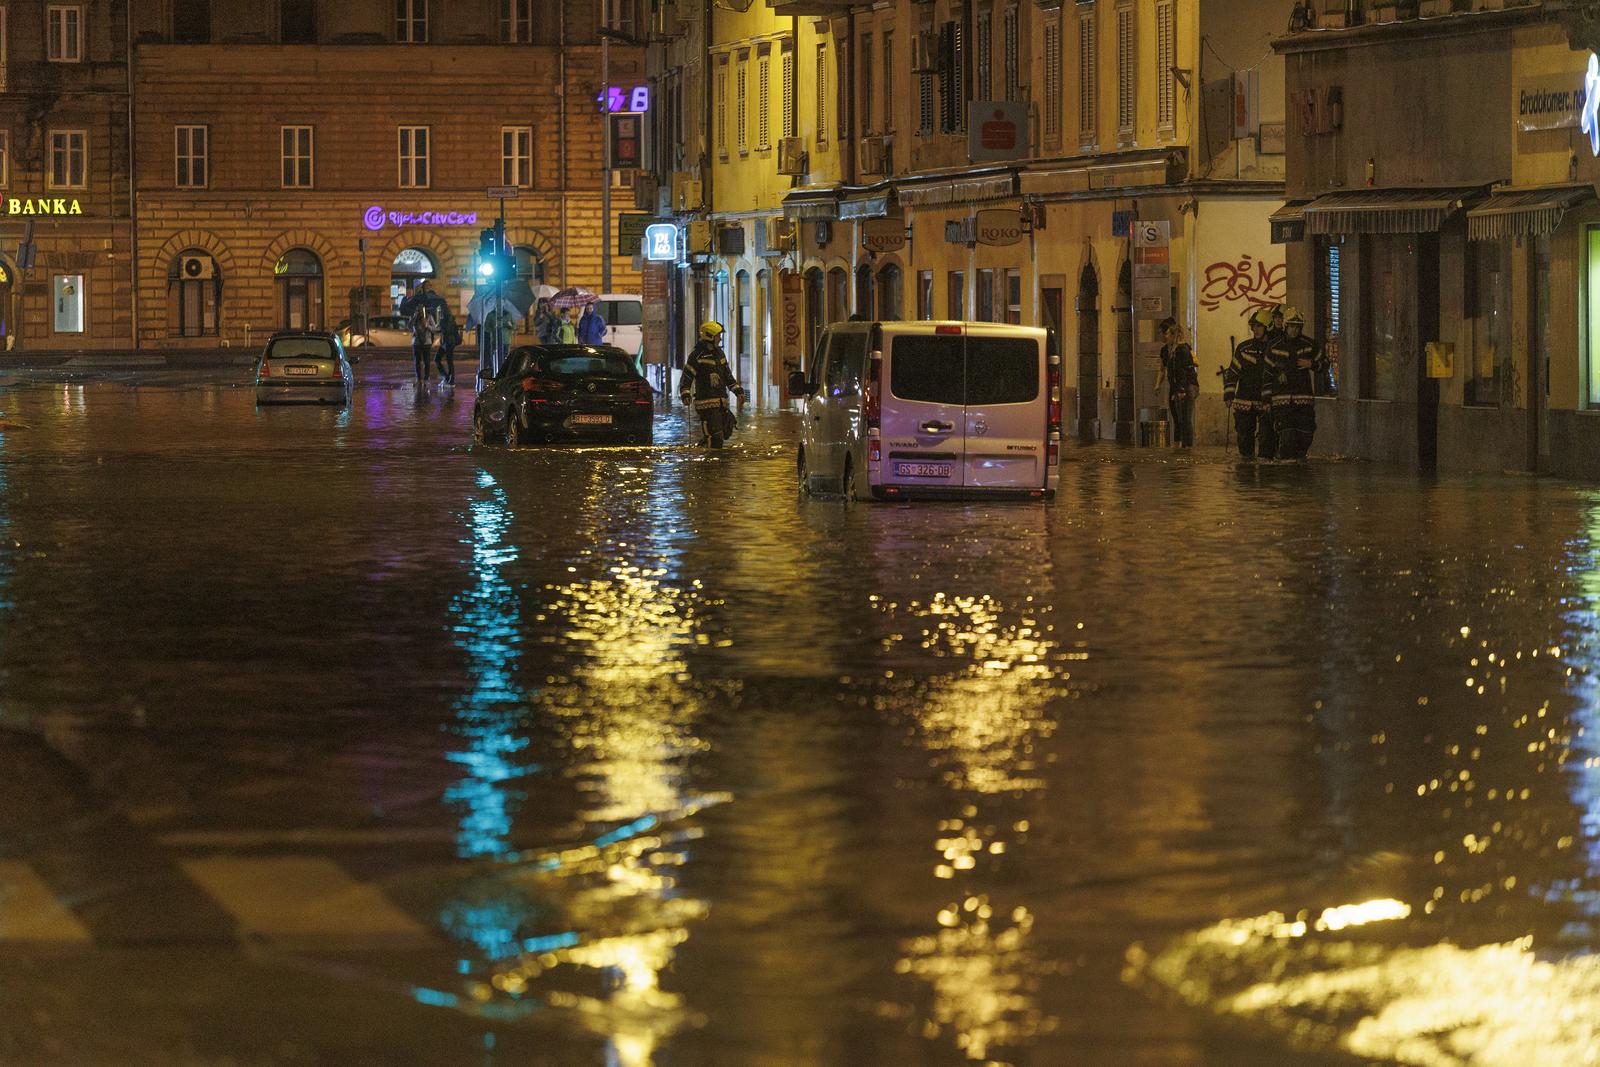 28.09.2022., Rijeka -  Zbog obilne kise poplavila je ulica Fiumara. Neki automobilo ostali su zarobljeni u vodi, vatrogasci i policija na terenu.
 Photo: Nel Pavletic/PIXSELL